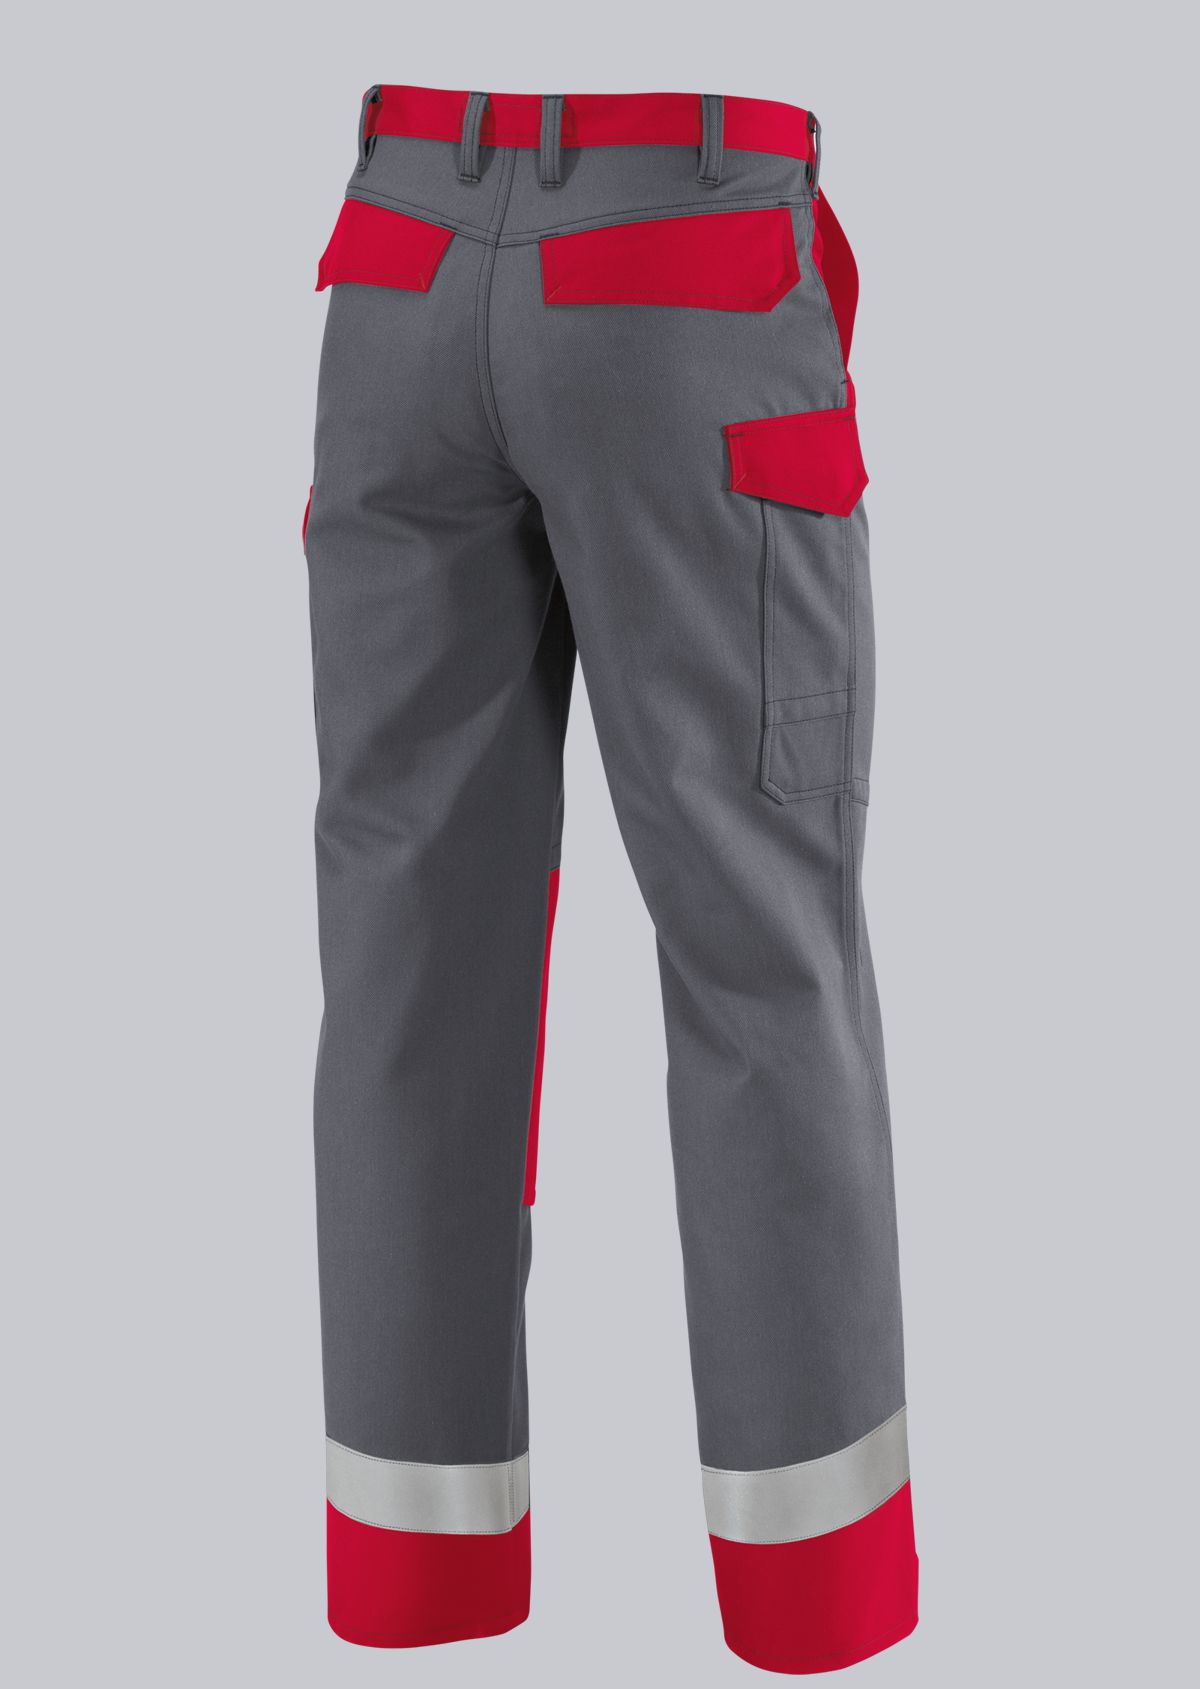 BP® Pantalon multinormes APC2 avec bandes réfléchissantes